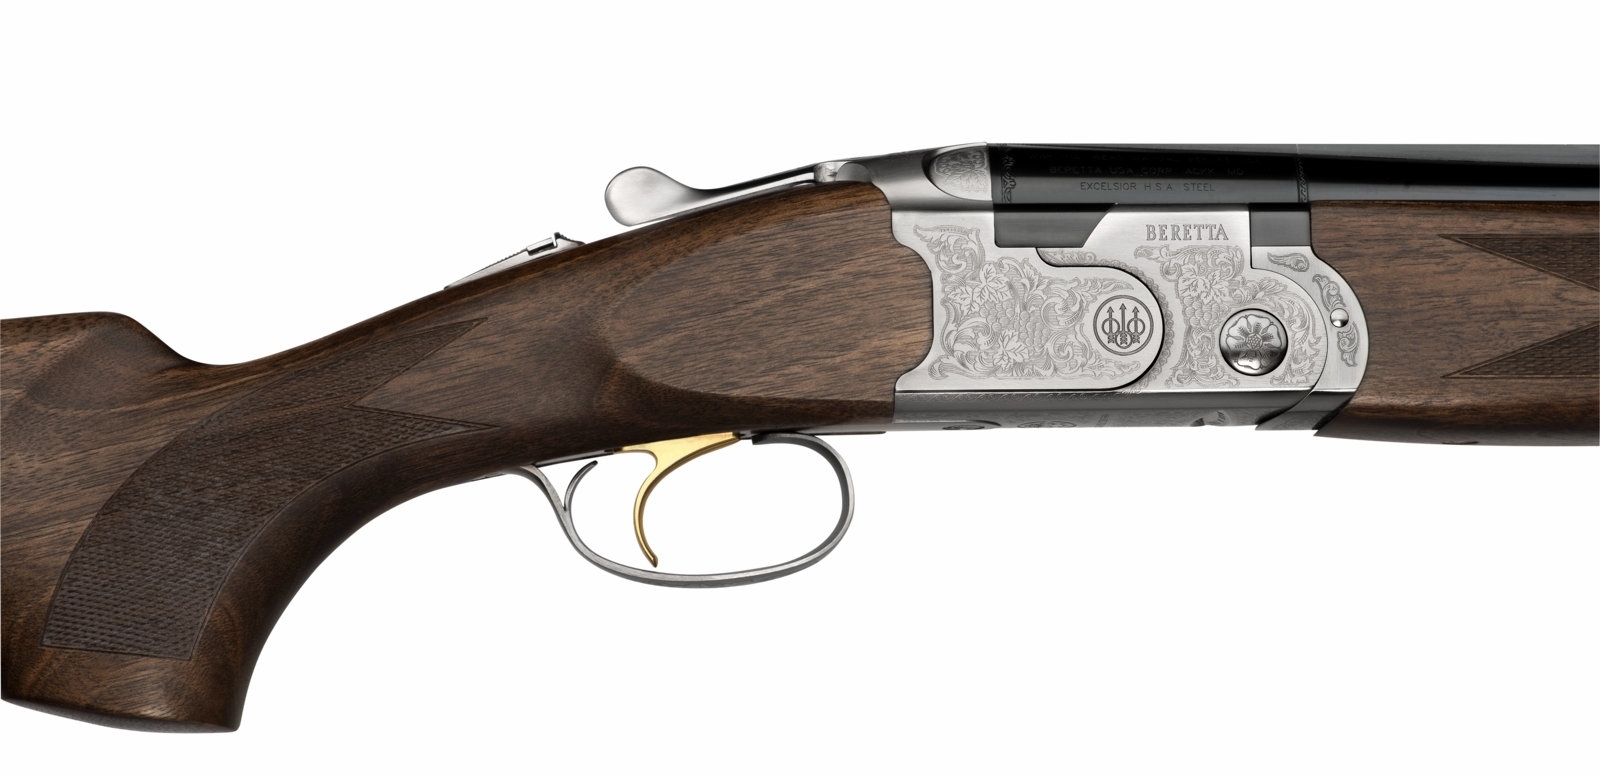 Beretta 686 SP 1 Jagd 12/76 LL71cm